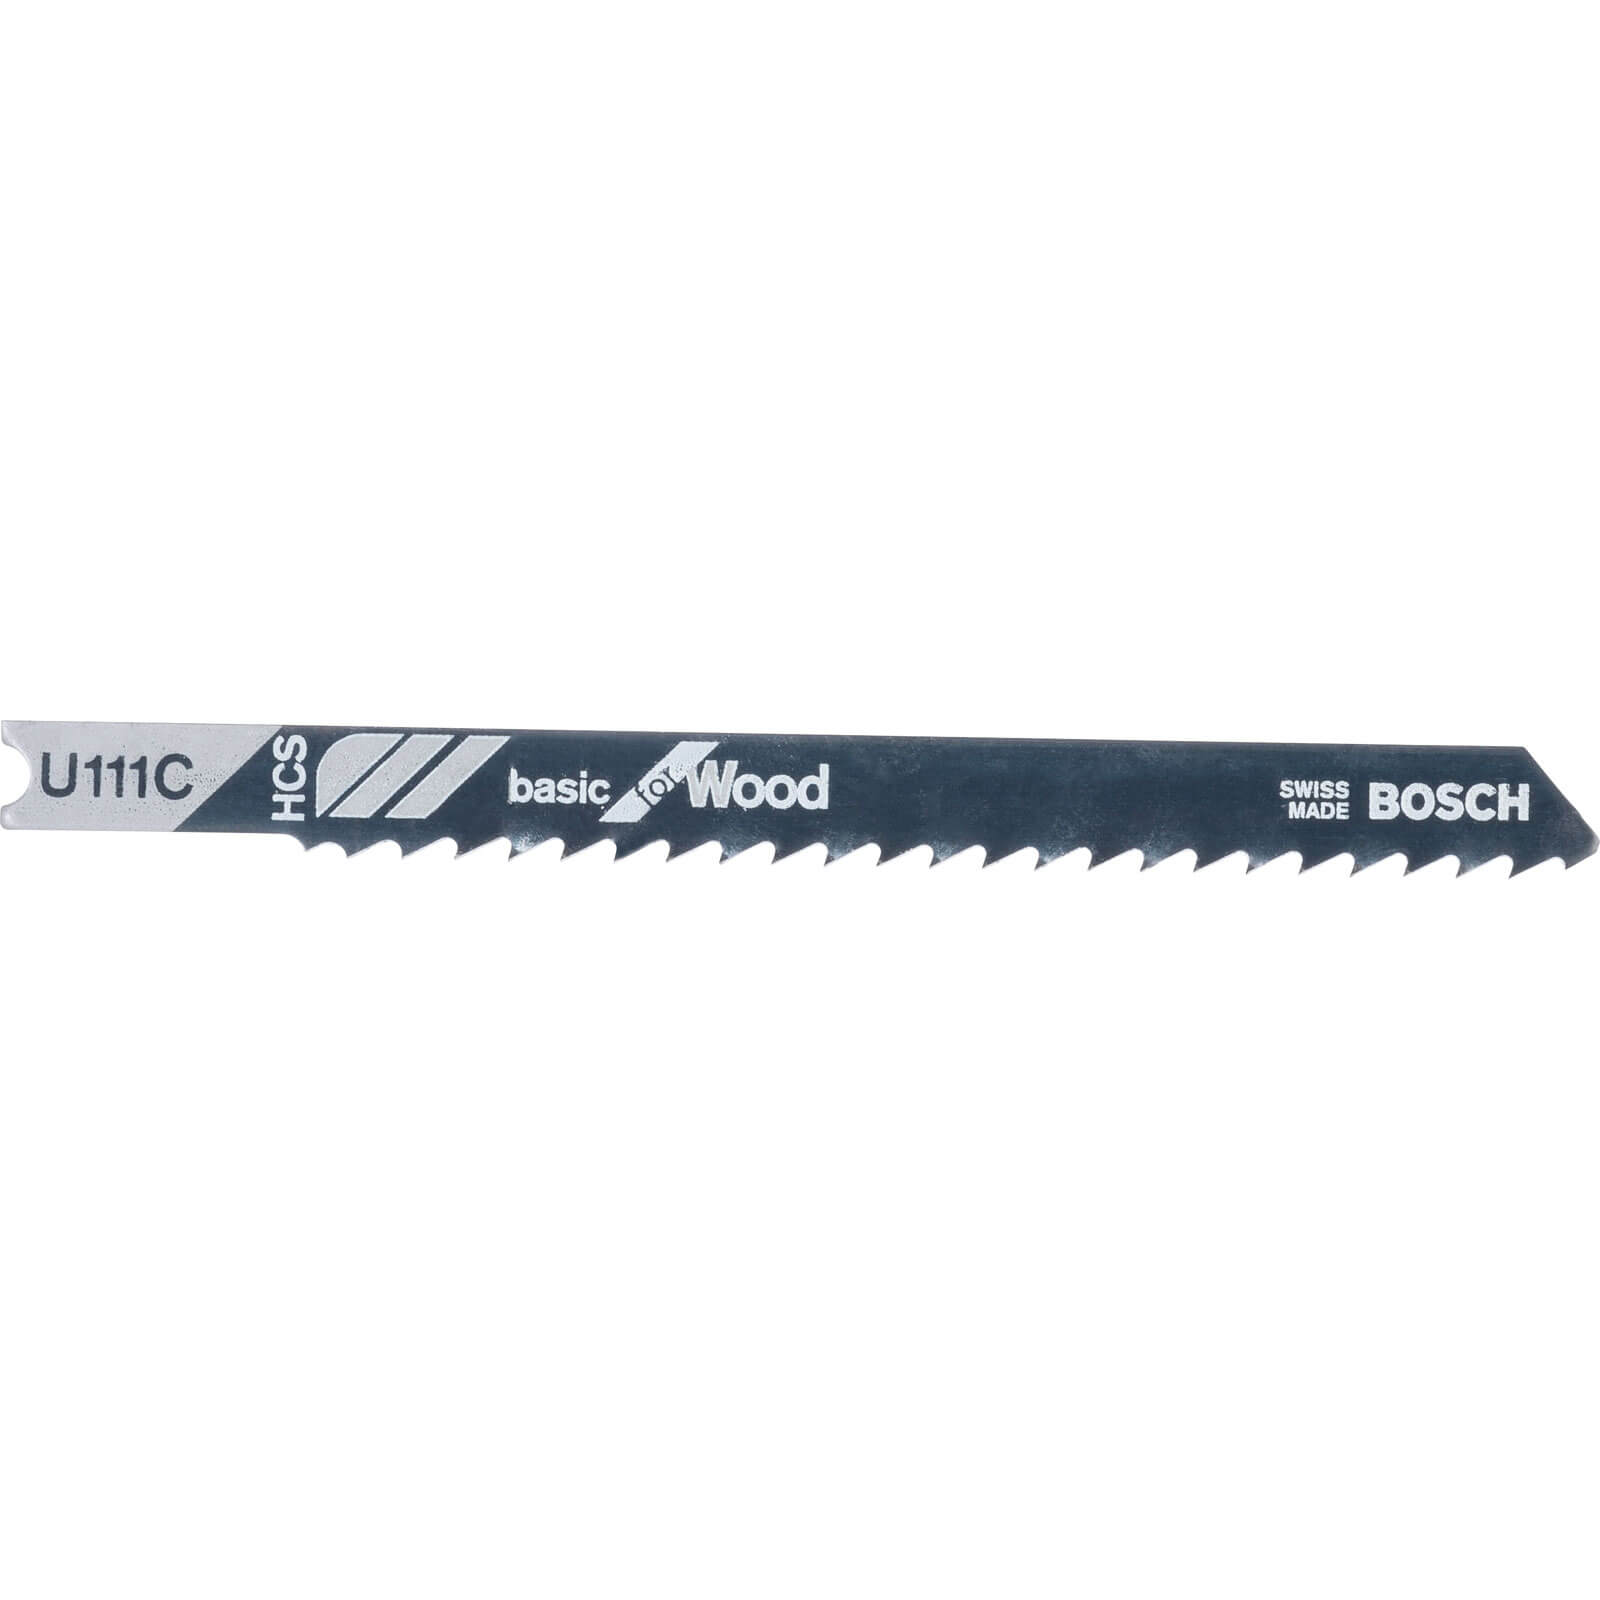 Image of Bosch U111 C Wood Cutting Jigsaw Blades Pack of 3